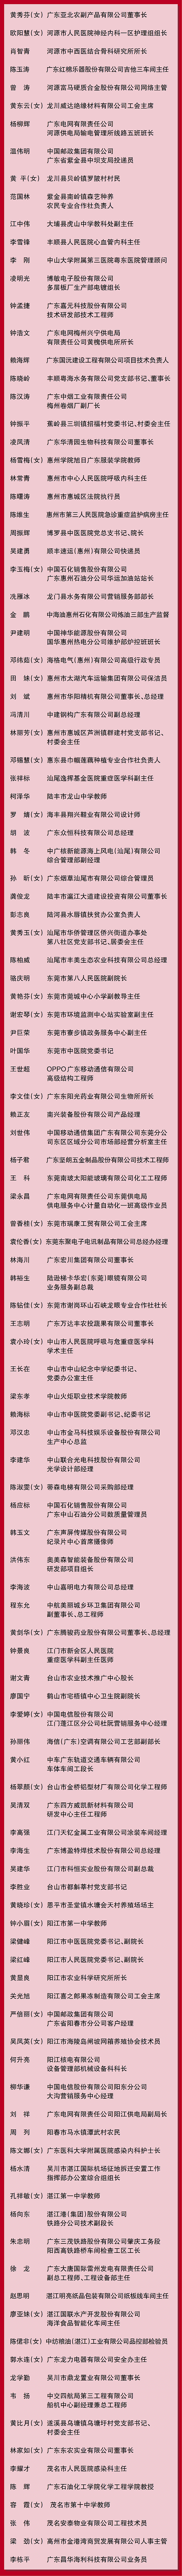 广东省劳动模范名单--02.jpg